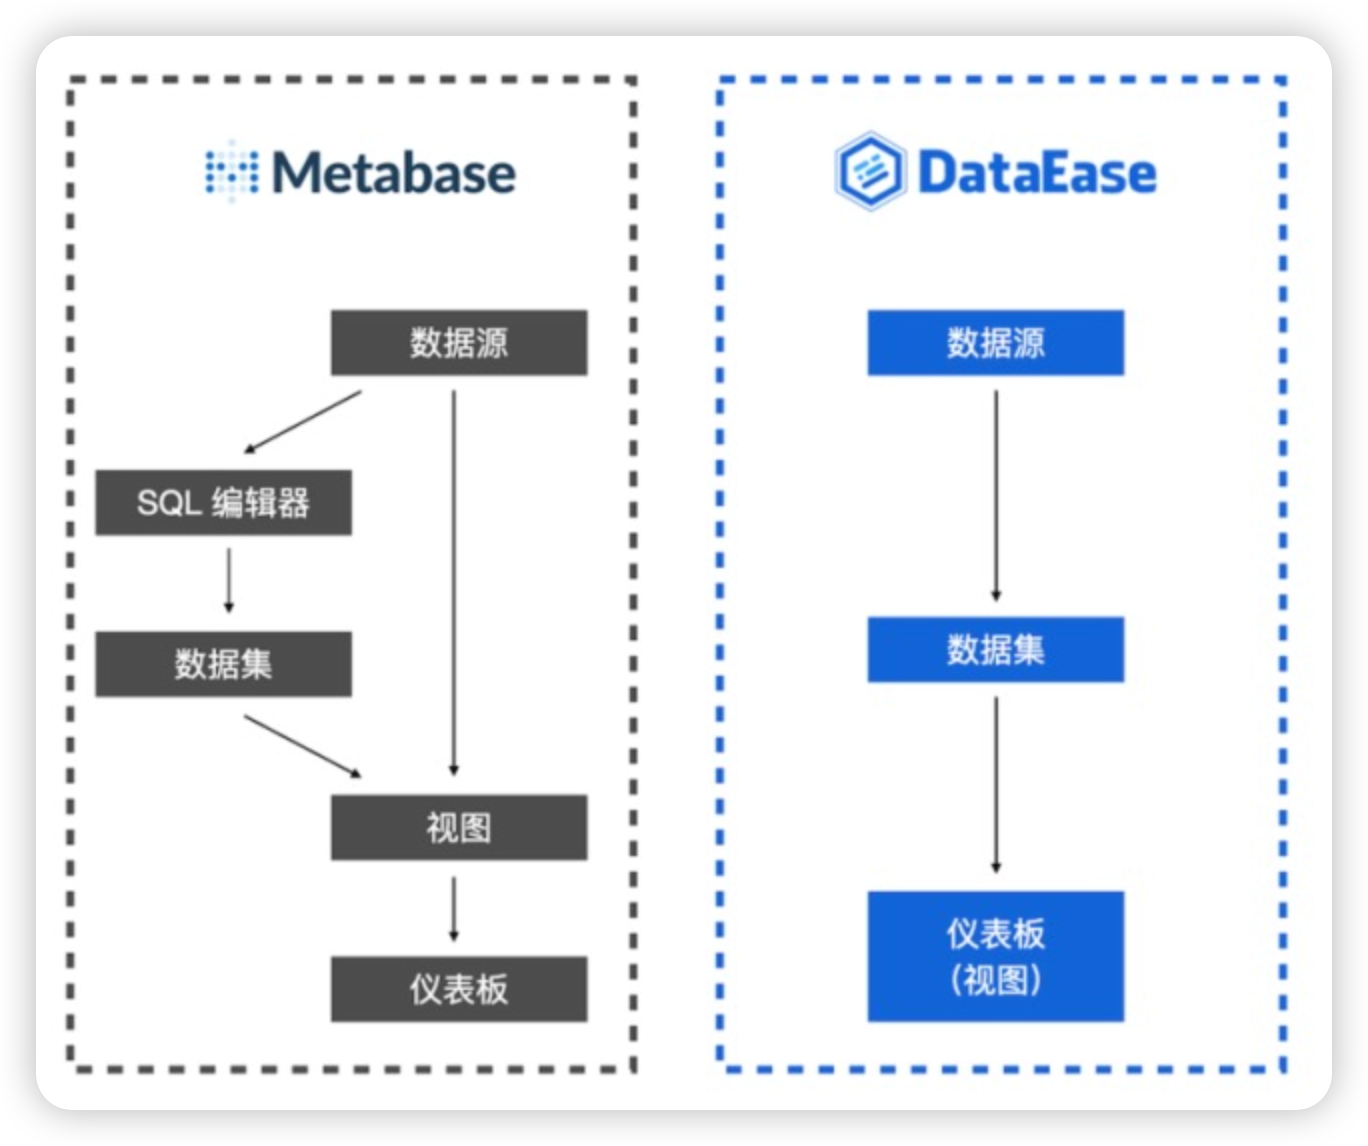 国内外开源数据可视化工具对比：DataEase 与 MetaBase 对比